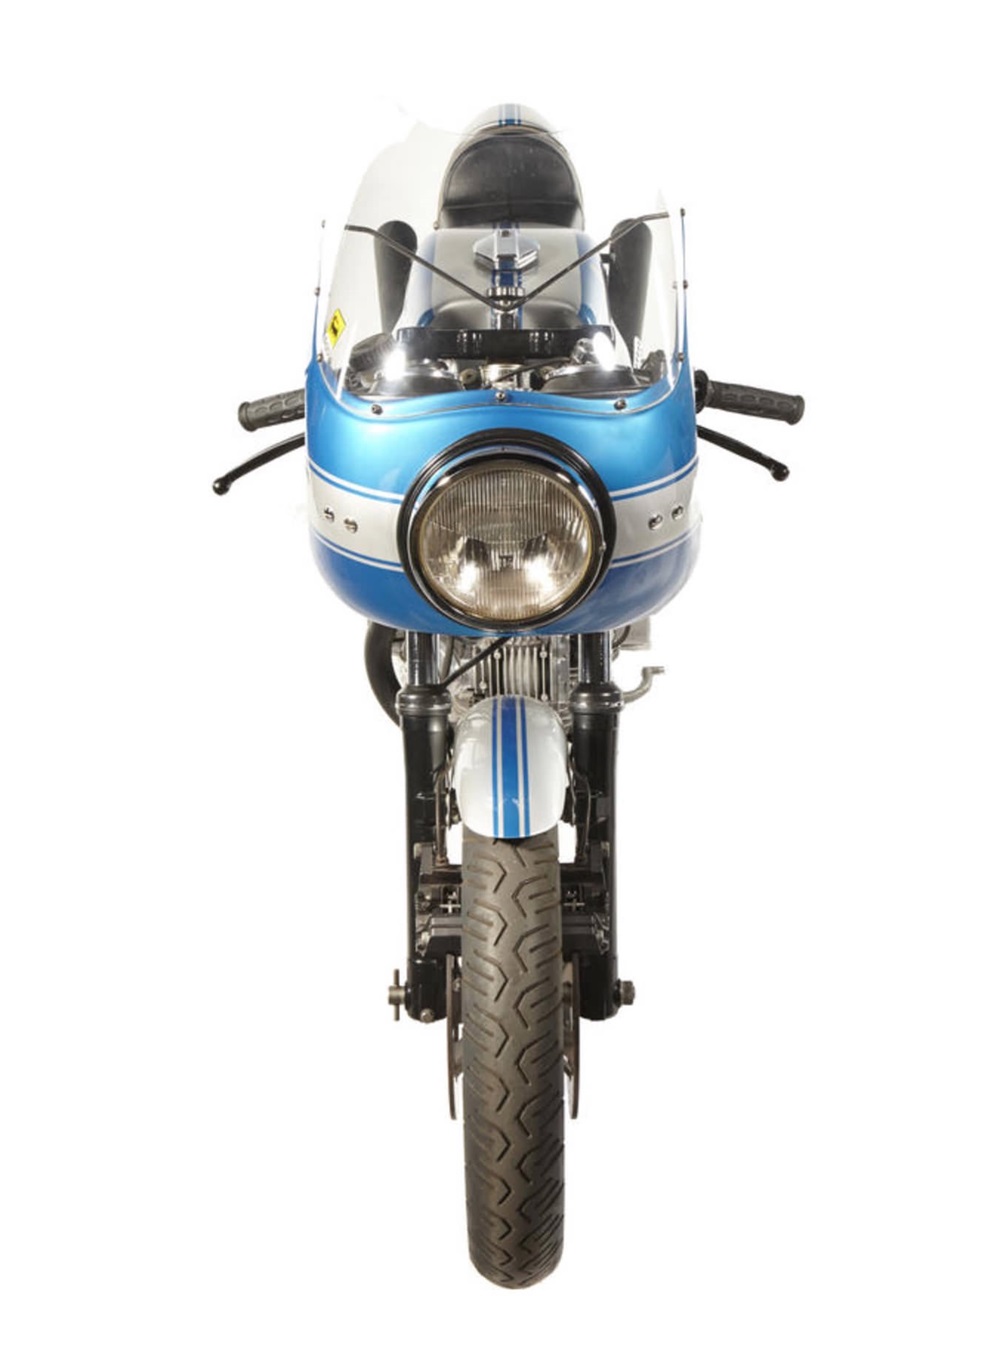 Купить раритетный мотоцикл Ducati можно за $40 - 50 тысяч